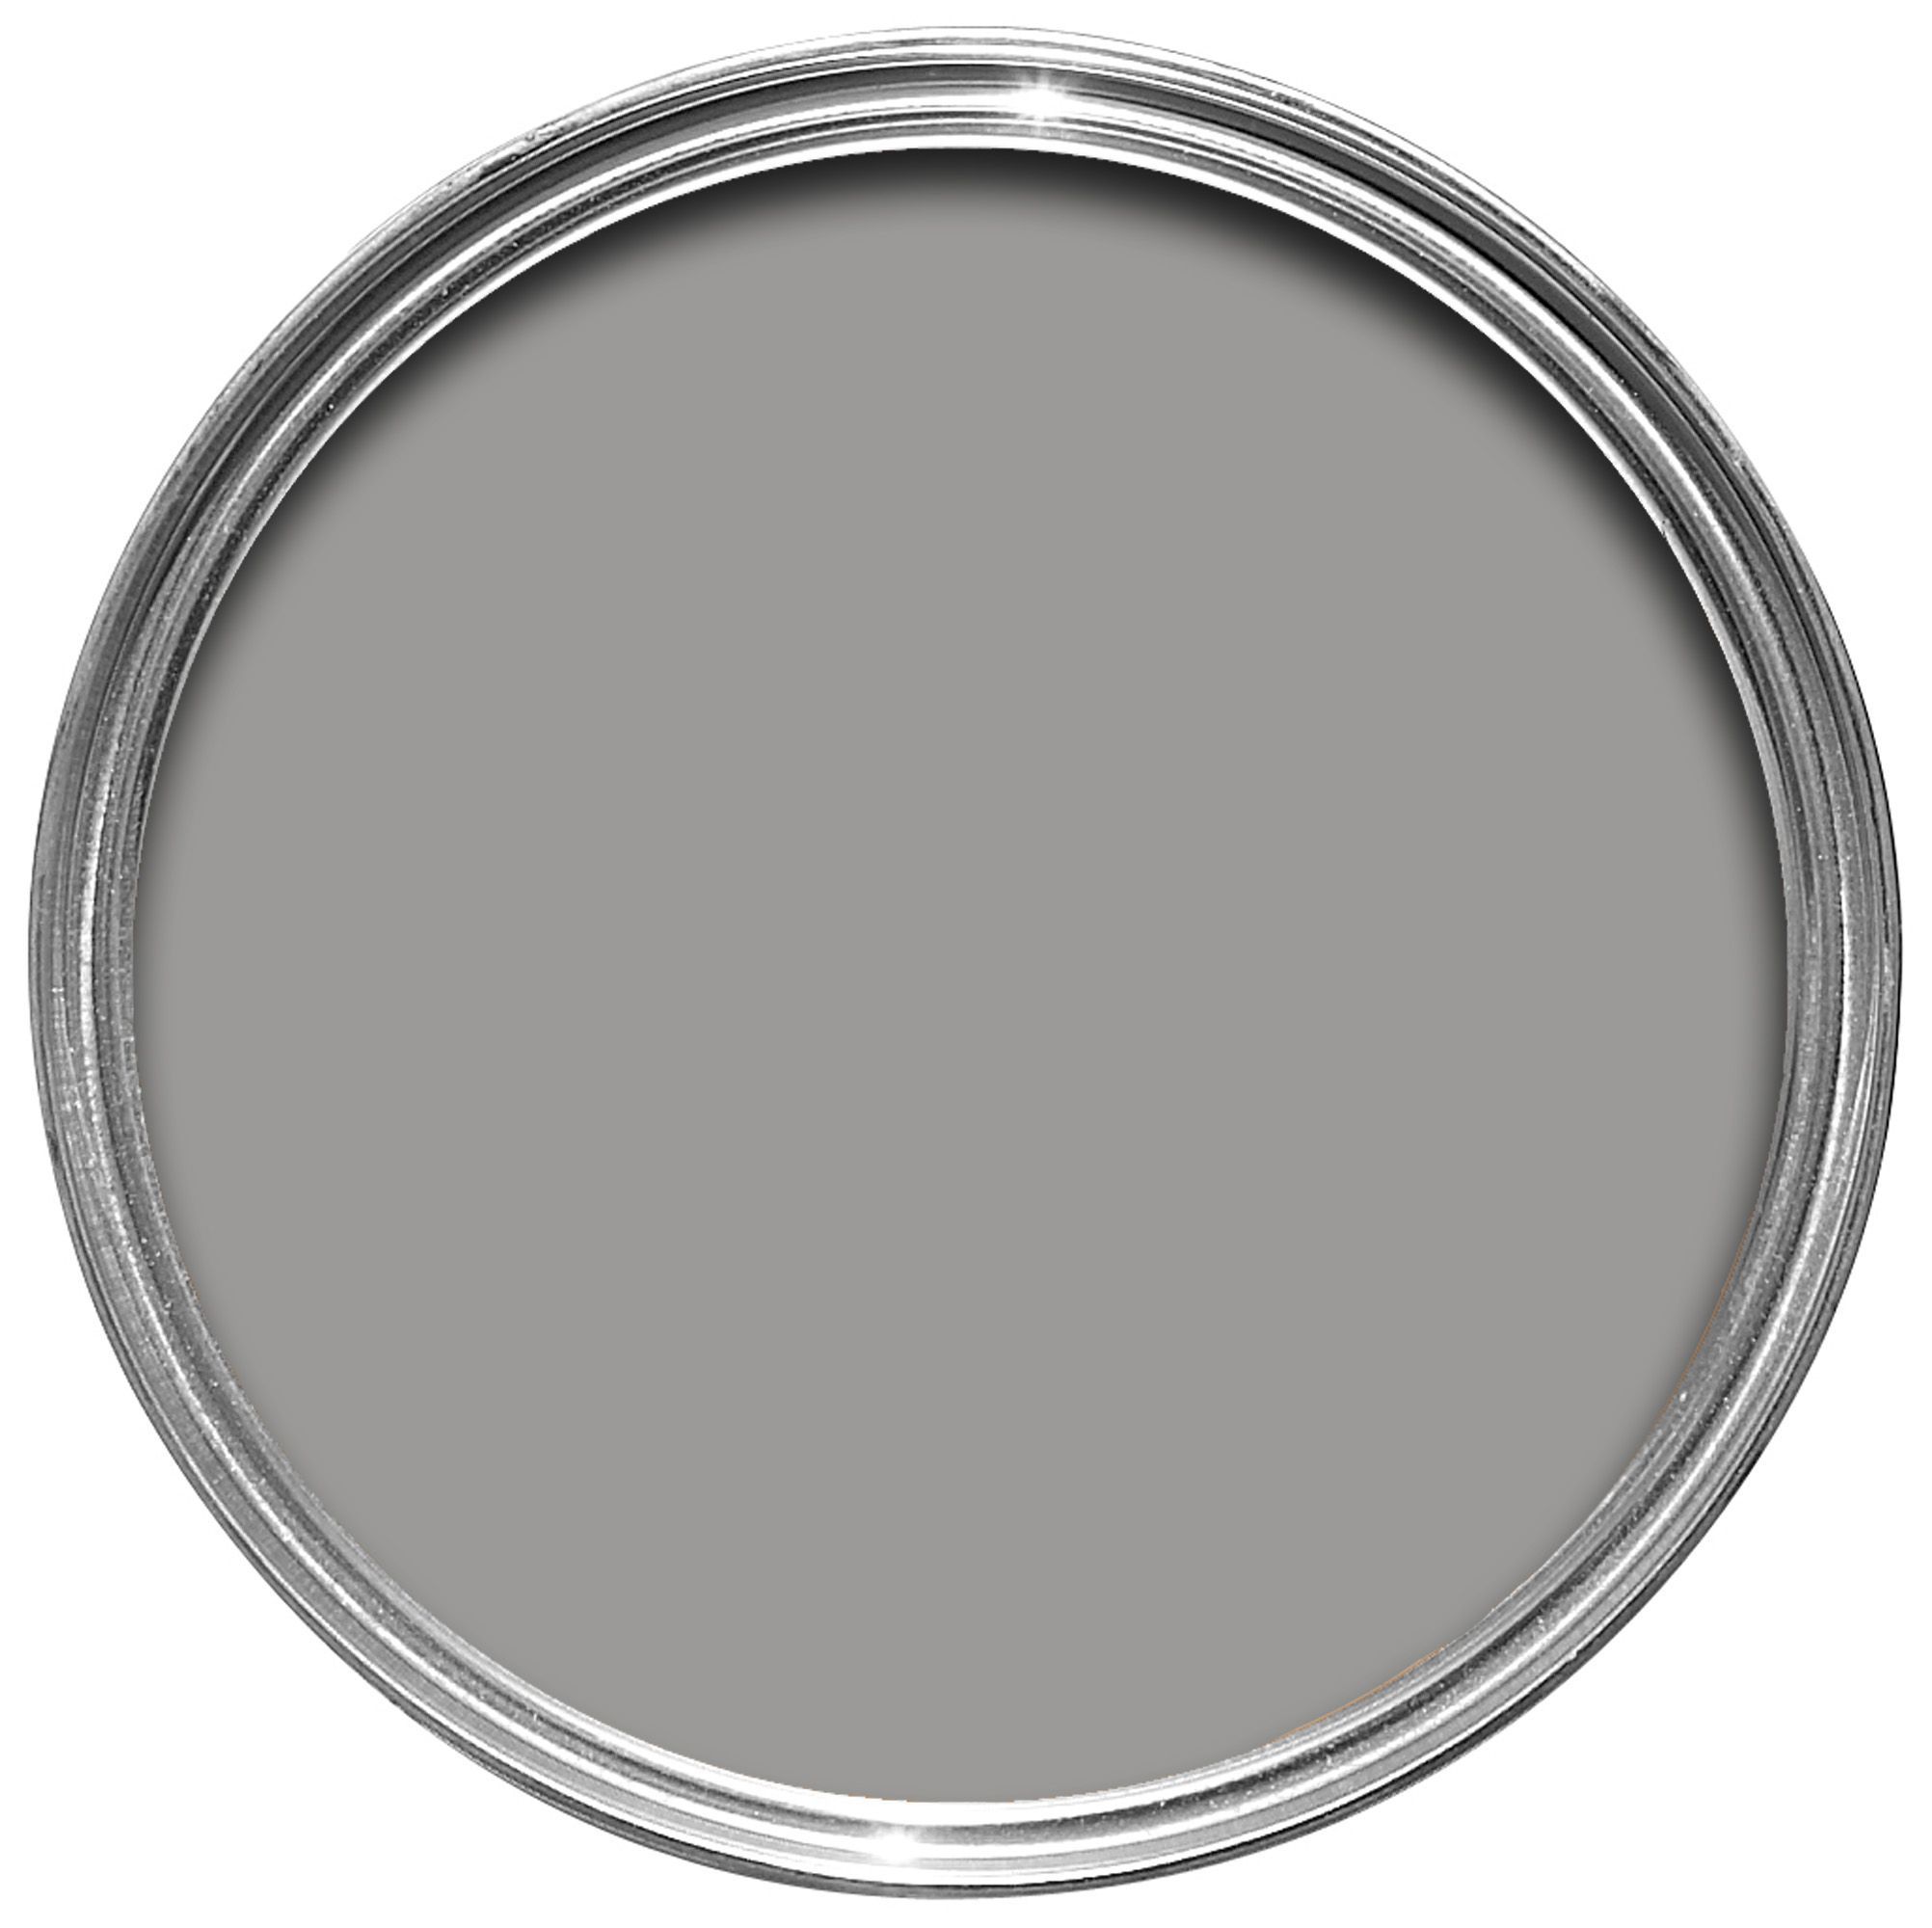 Rust-Oleum Winter grey Chalky effect Matt Furniture paint, 750ml